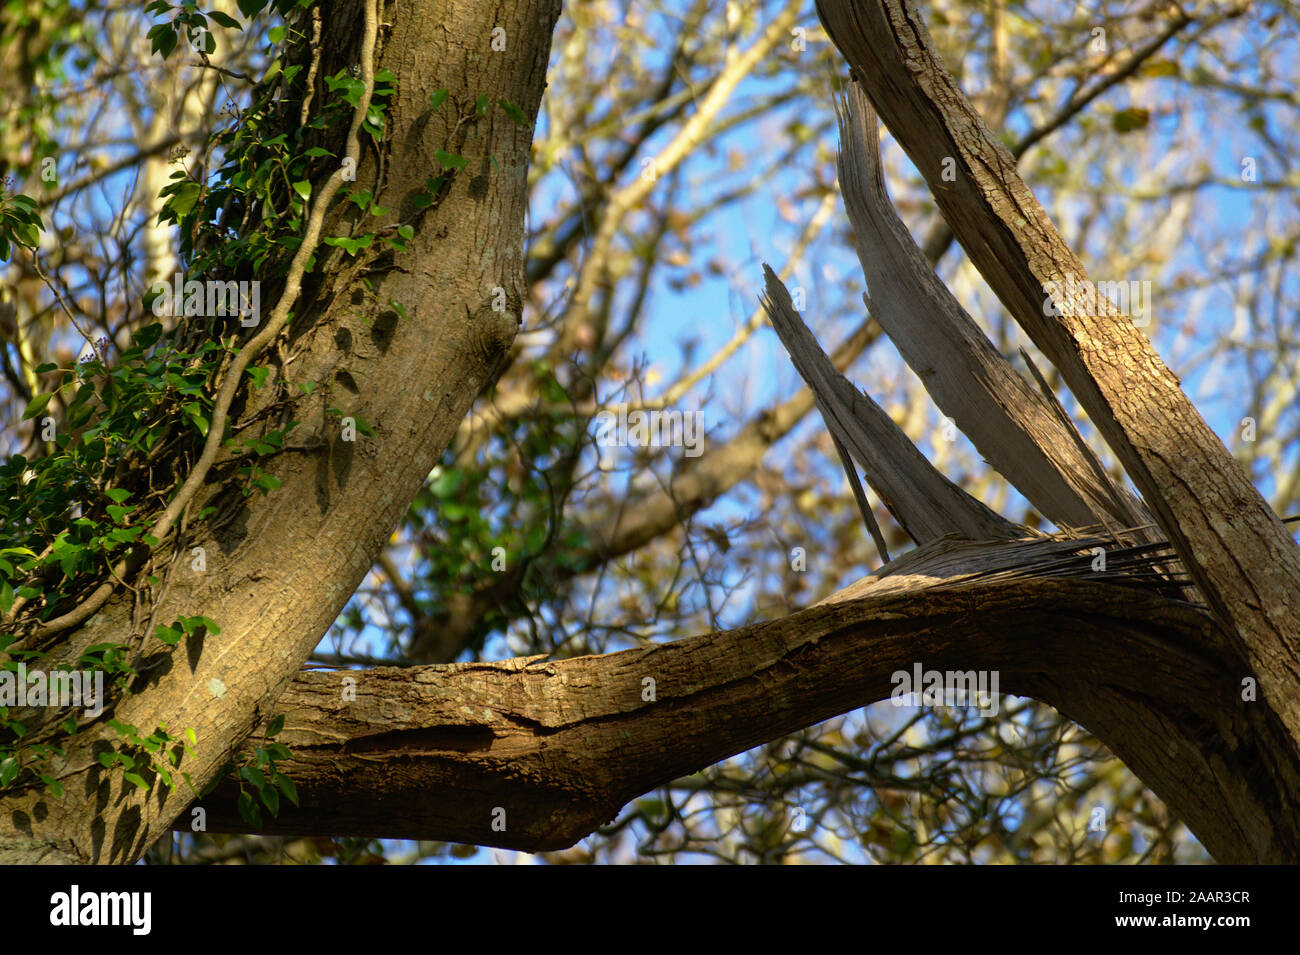 Dramatique britannique branche cassée sur un arbre dans la forêt avec un fond de ciel bleu et vert lierre grimpant sur le tronc de l'arbre. Banque D'Images